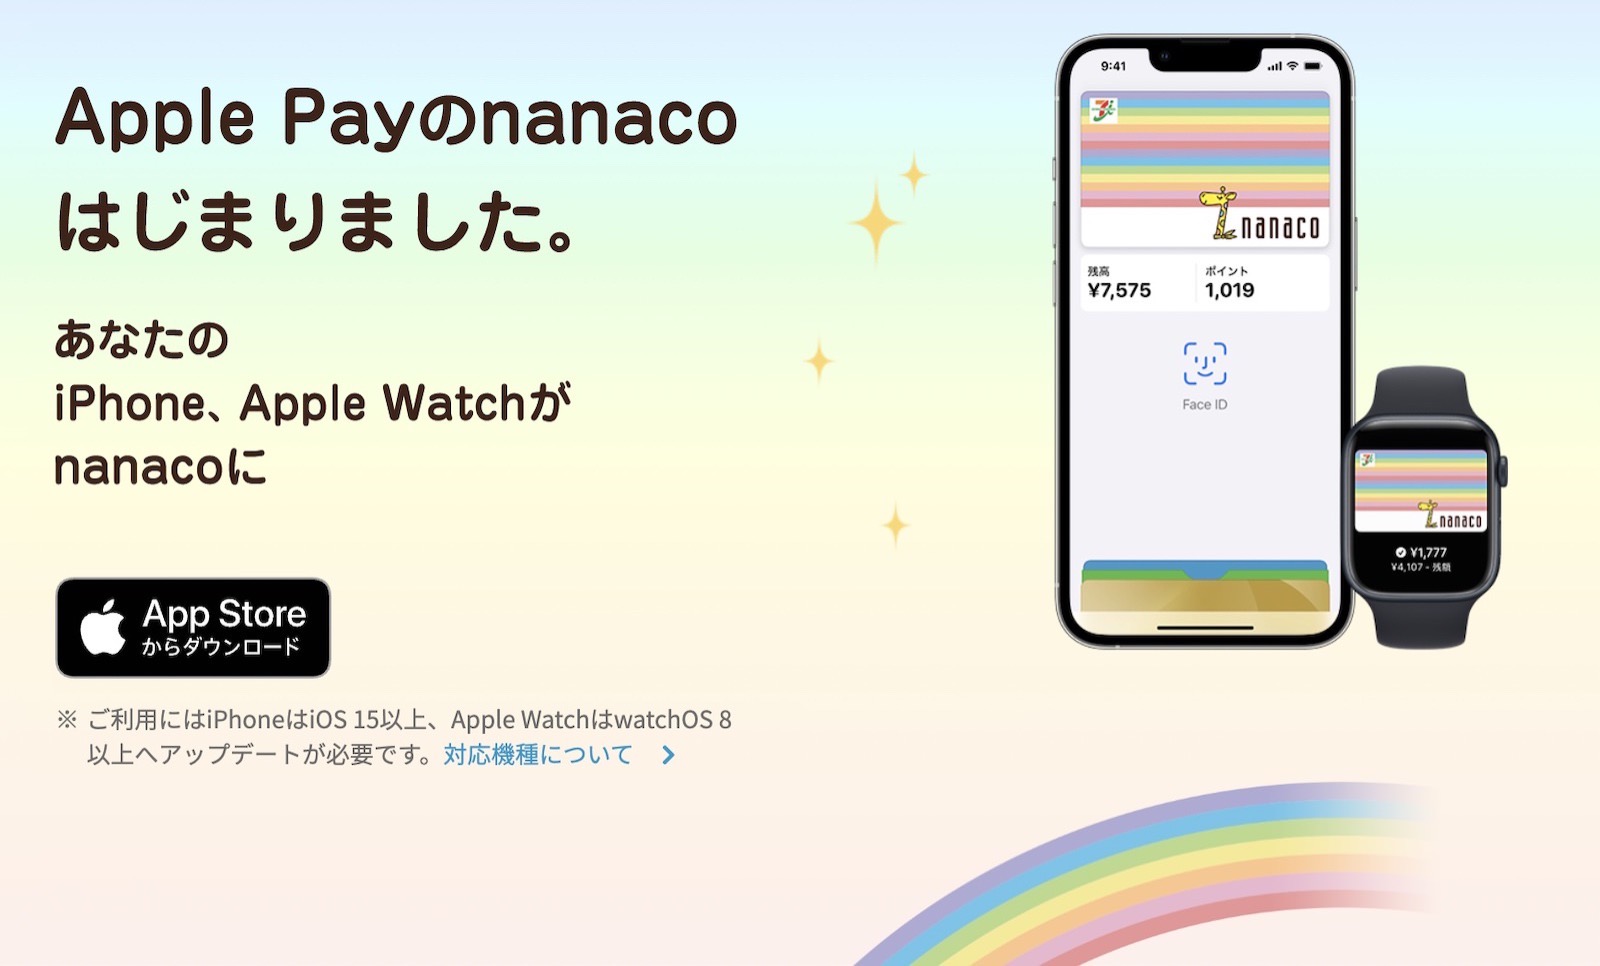 Nanaco apple pay